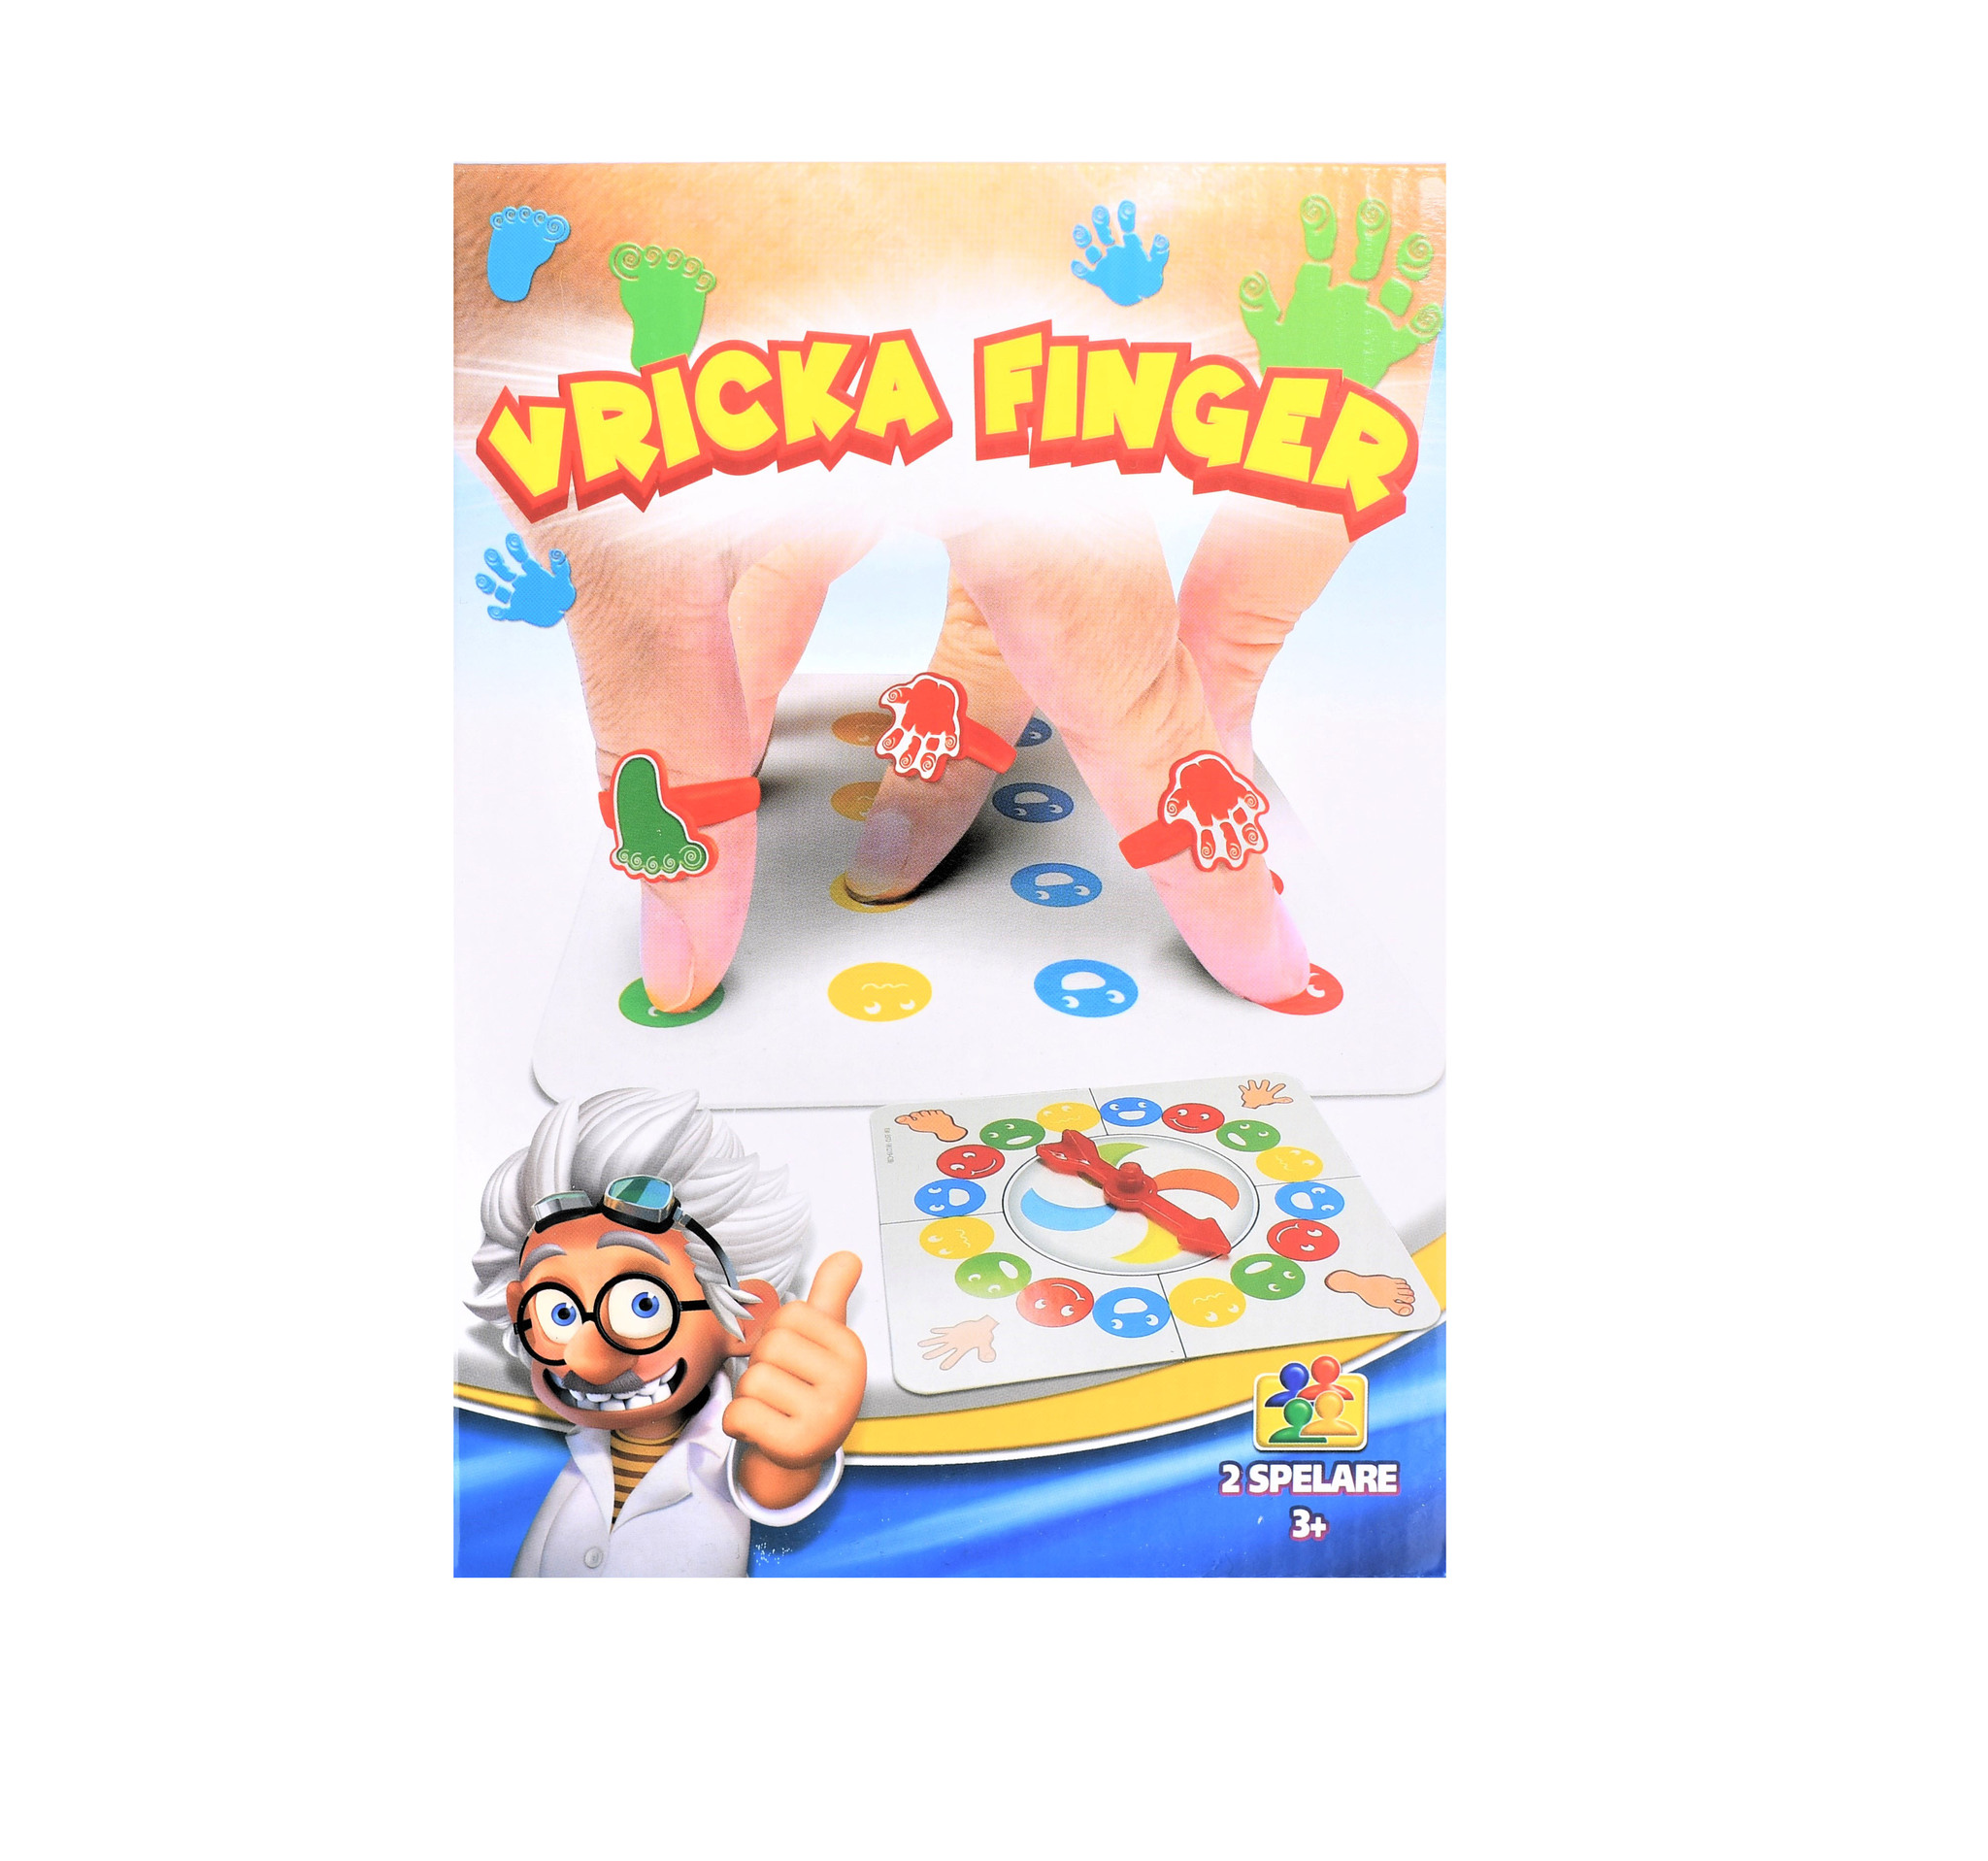 Vricka Finger - Finger Twister